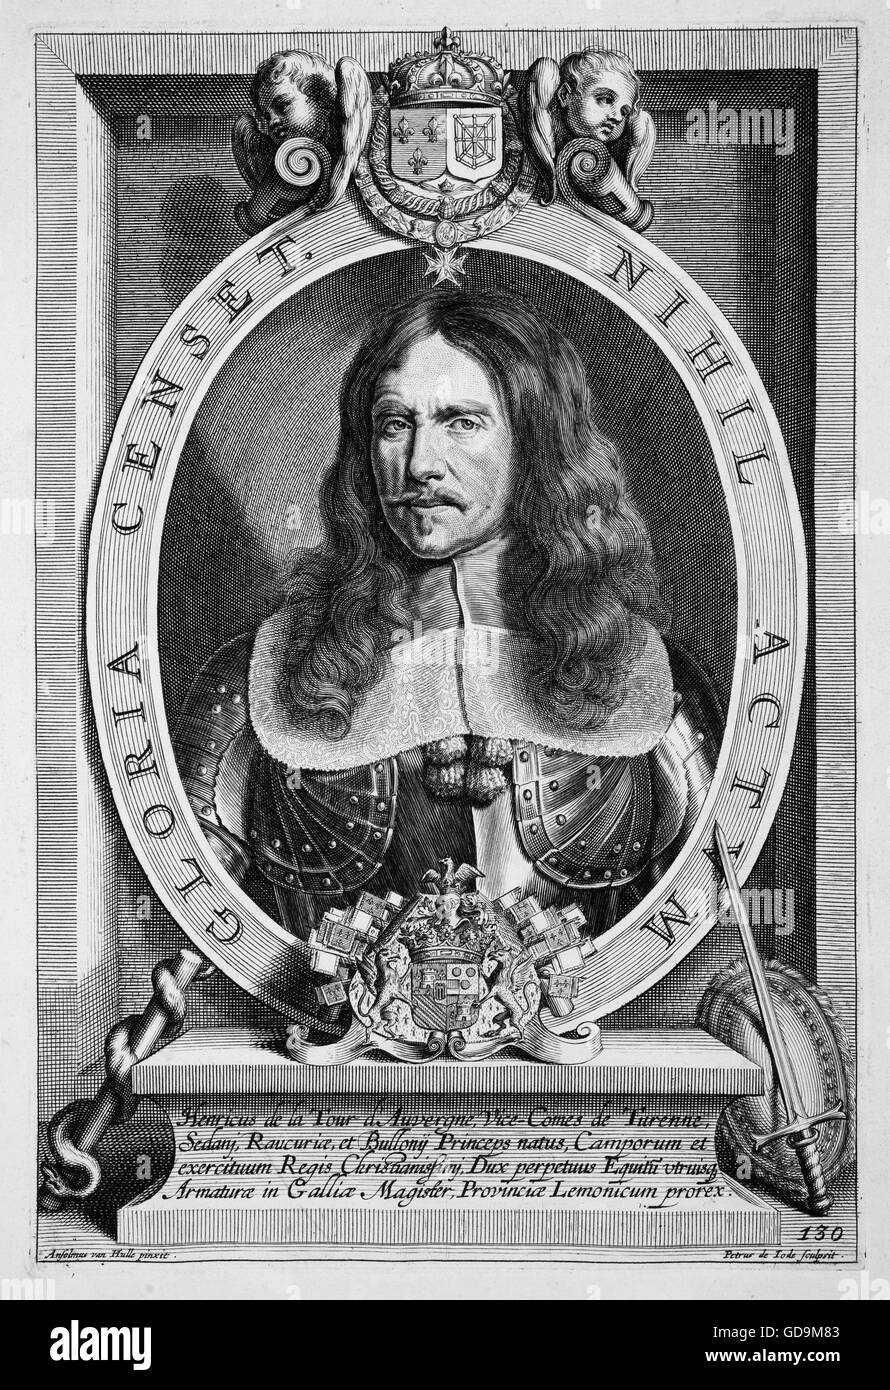 HENRI de la tour d'AUVERGNE, vicomte de Turenne (1611-1675) commandant de l'armée française et maréchal de France. Gravure datée 1717 Banque D'Images